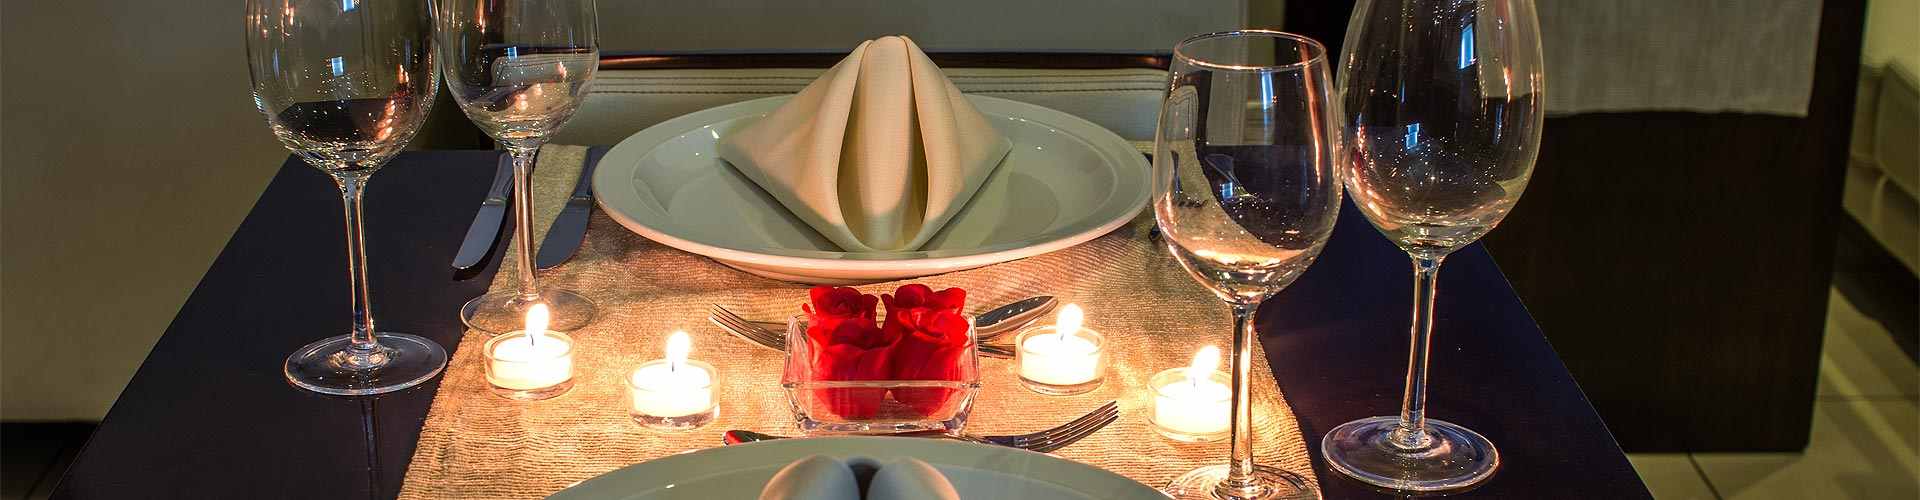 Restaurantes para San Valentín 2020 en O Mosteiro